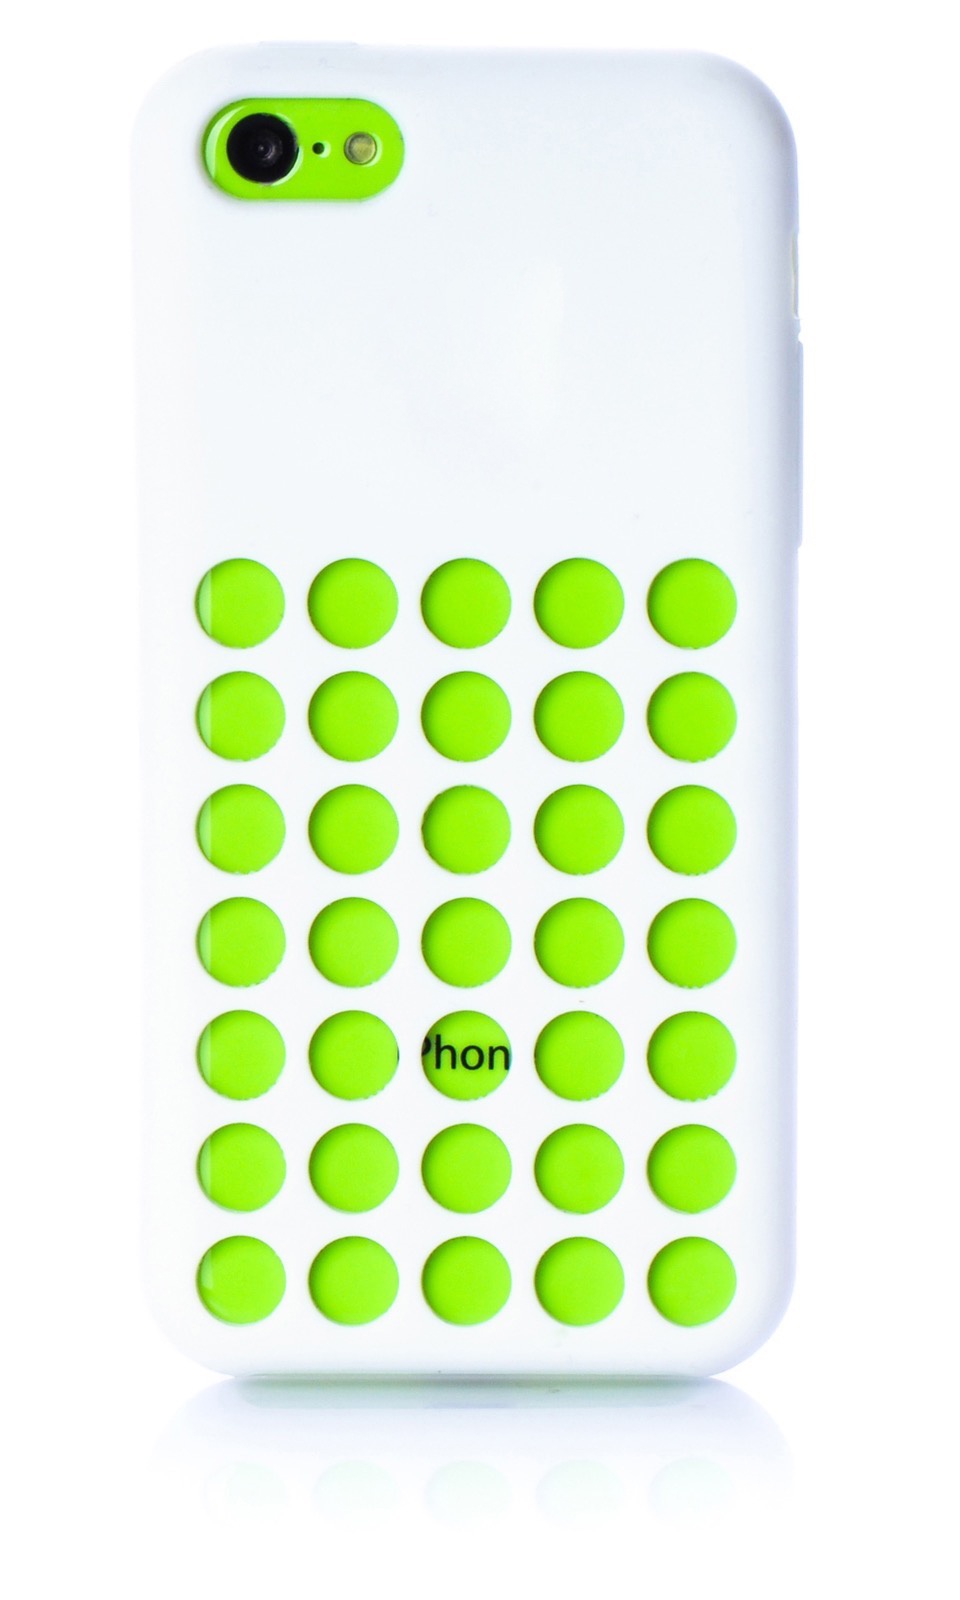 фото Чехол для сотового телефона iNeez накладка силикон с отверстиями white для Apple iPhone 5C, белый